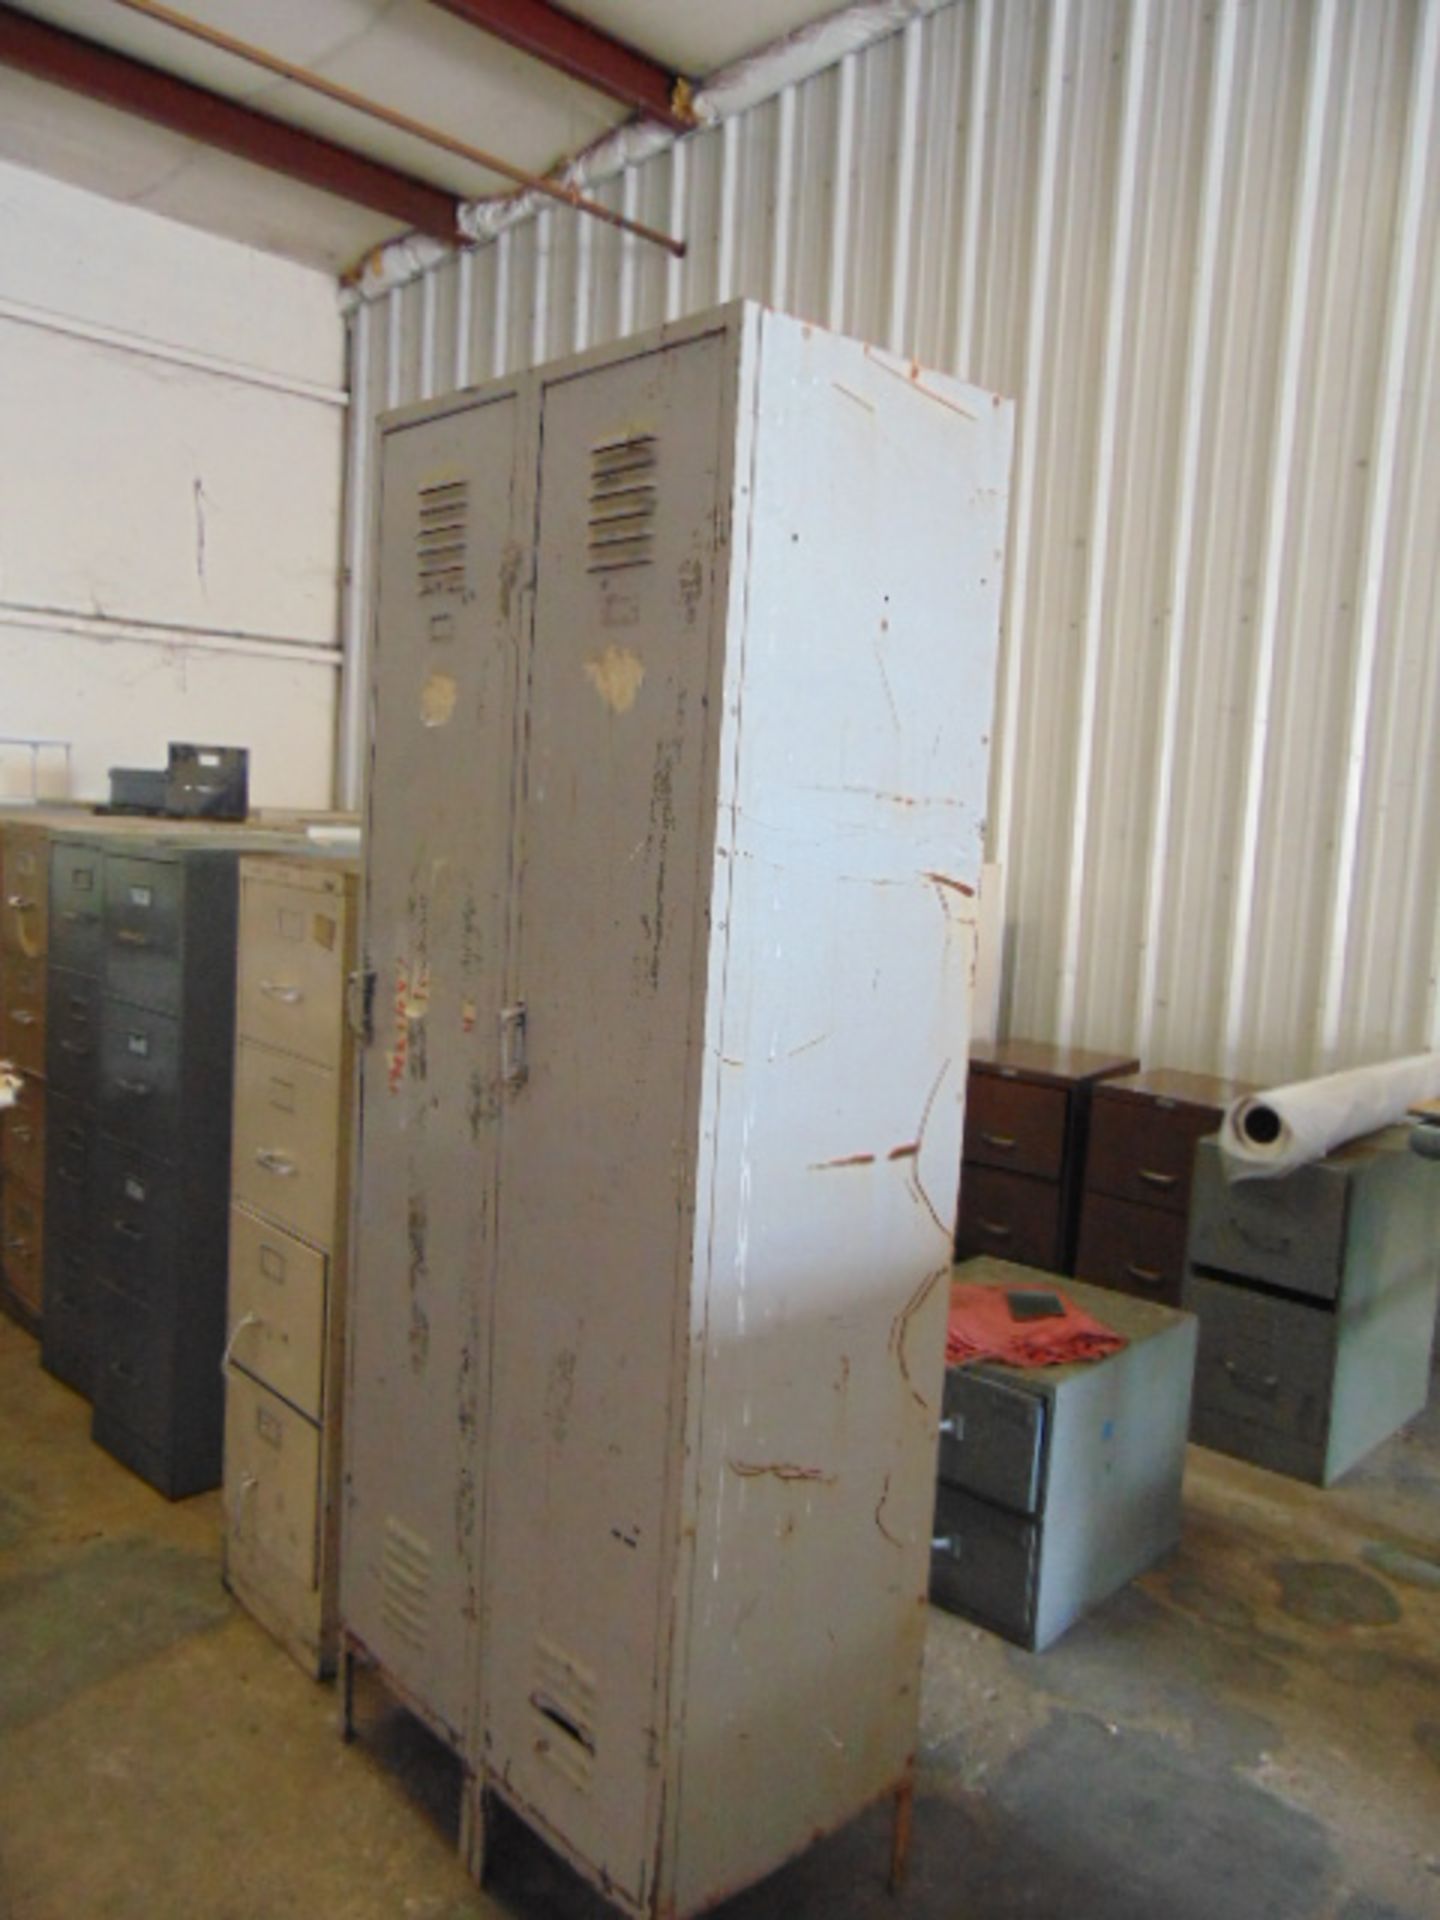 LOT CONSISTING OF: 2-door supply cabinet, 2-door locker & (25) file cabinets, assorted - Image 2 of 2